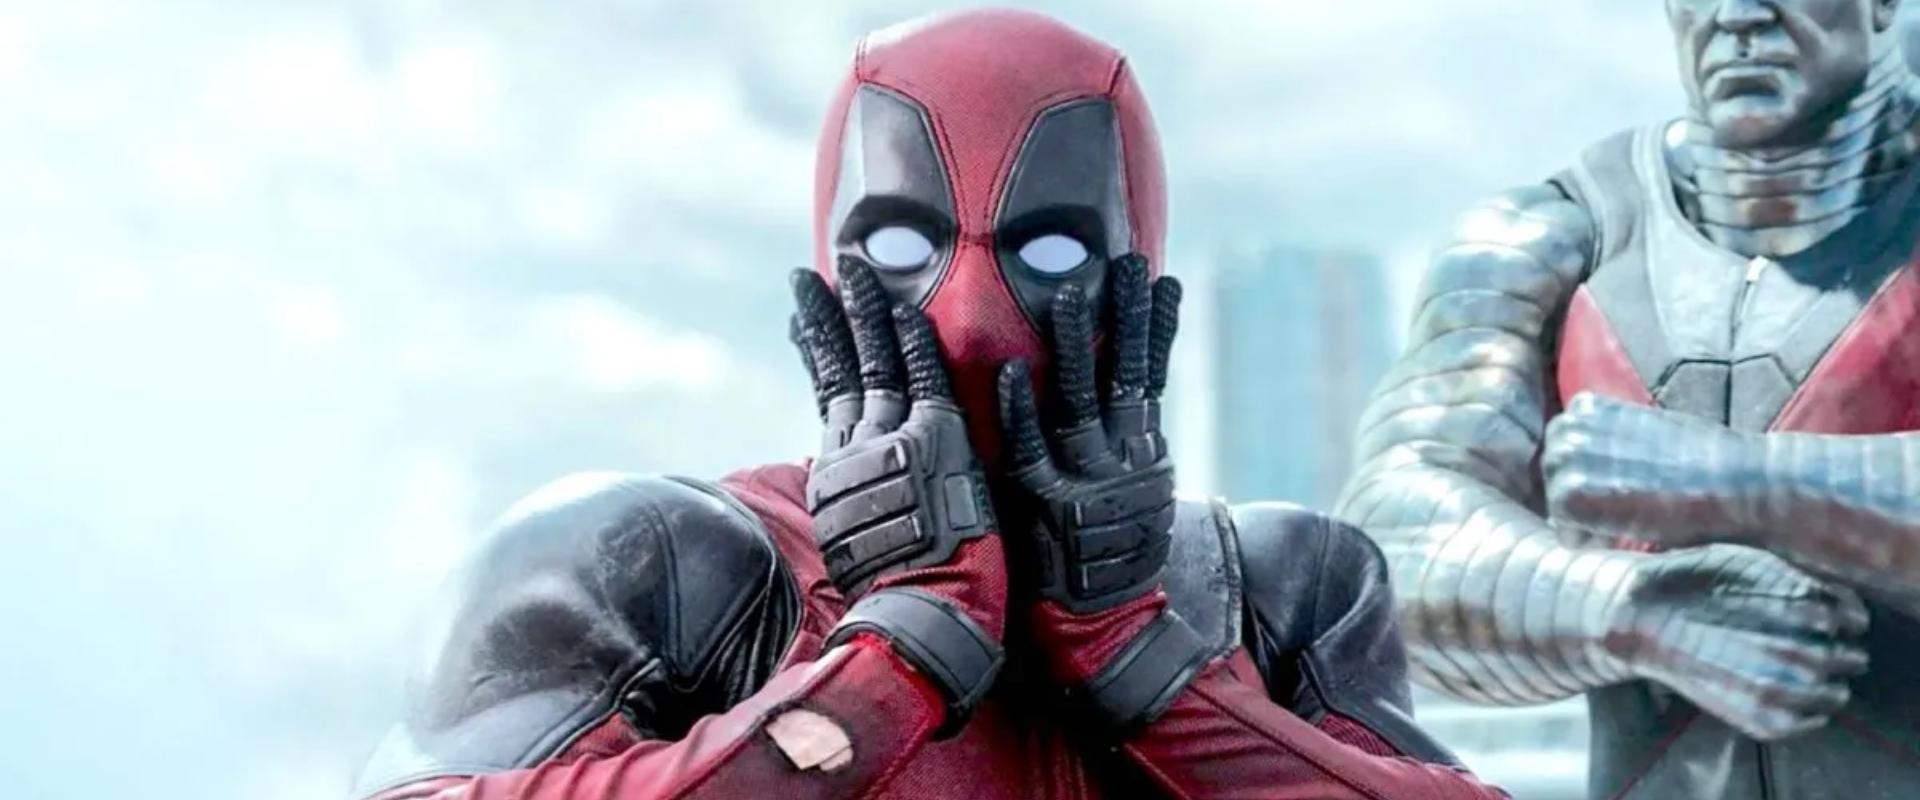 A Deadpool 3 új spoileres forgatási képei egy őrült sztorit sejtetnek